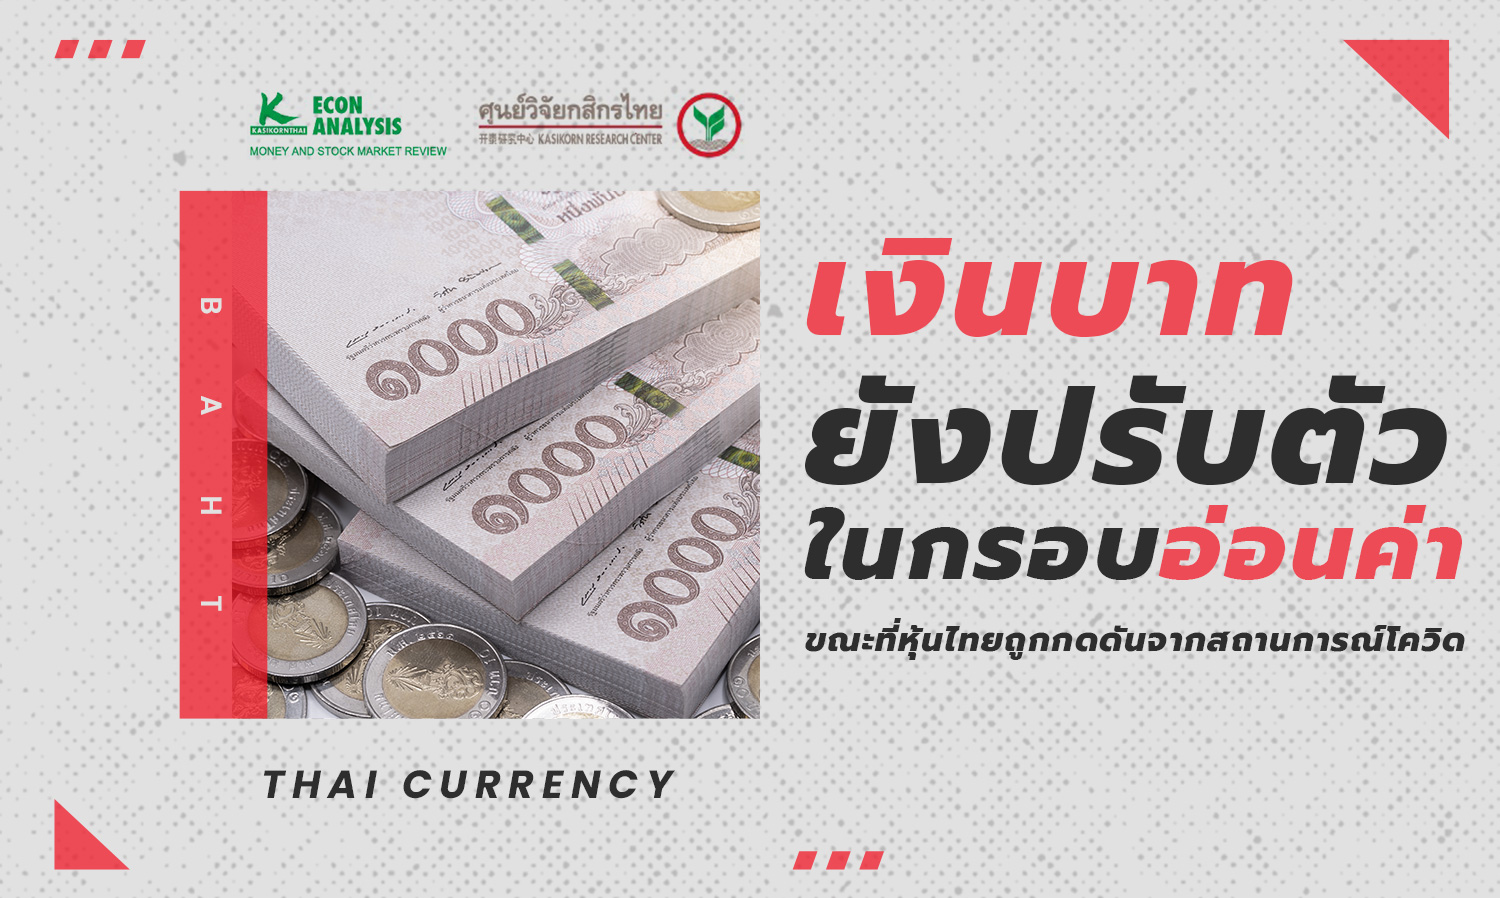 เงินบาทยังปรับตัวในกรอบอ่อนค่า ขณะที่หุ้นไทยถูกกดดันจากสถานการณ์โควิด